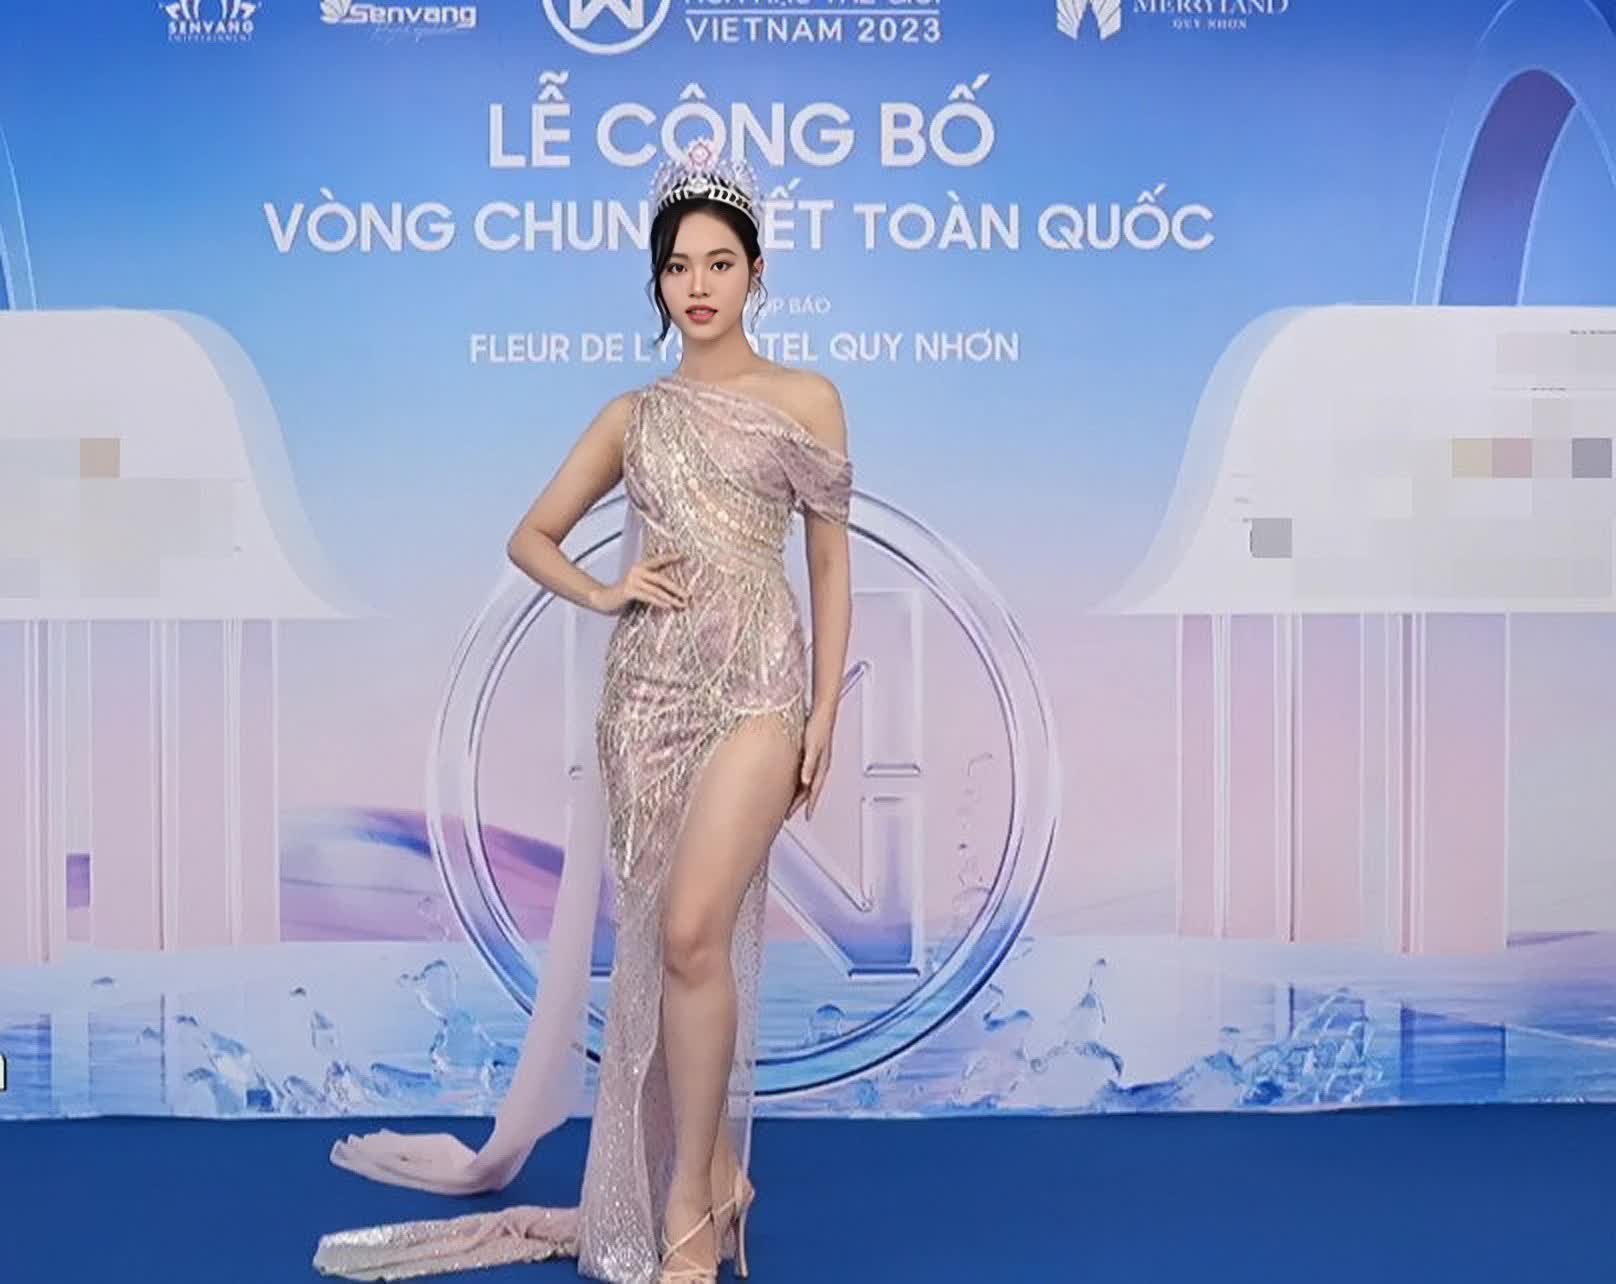 Thảm đỏ lễ công bố vòng chung kết Miss World Vietnam 2023: Màn đọ sắc của Thanh Thủy - Tiểu Vy gây chú ý - Ảnh 7.